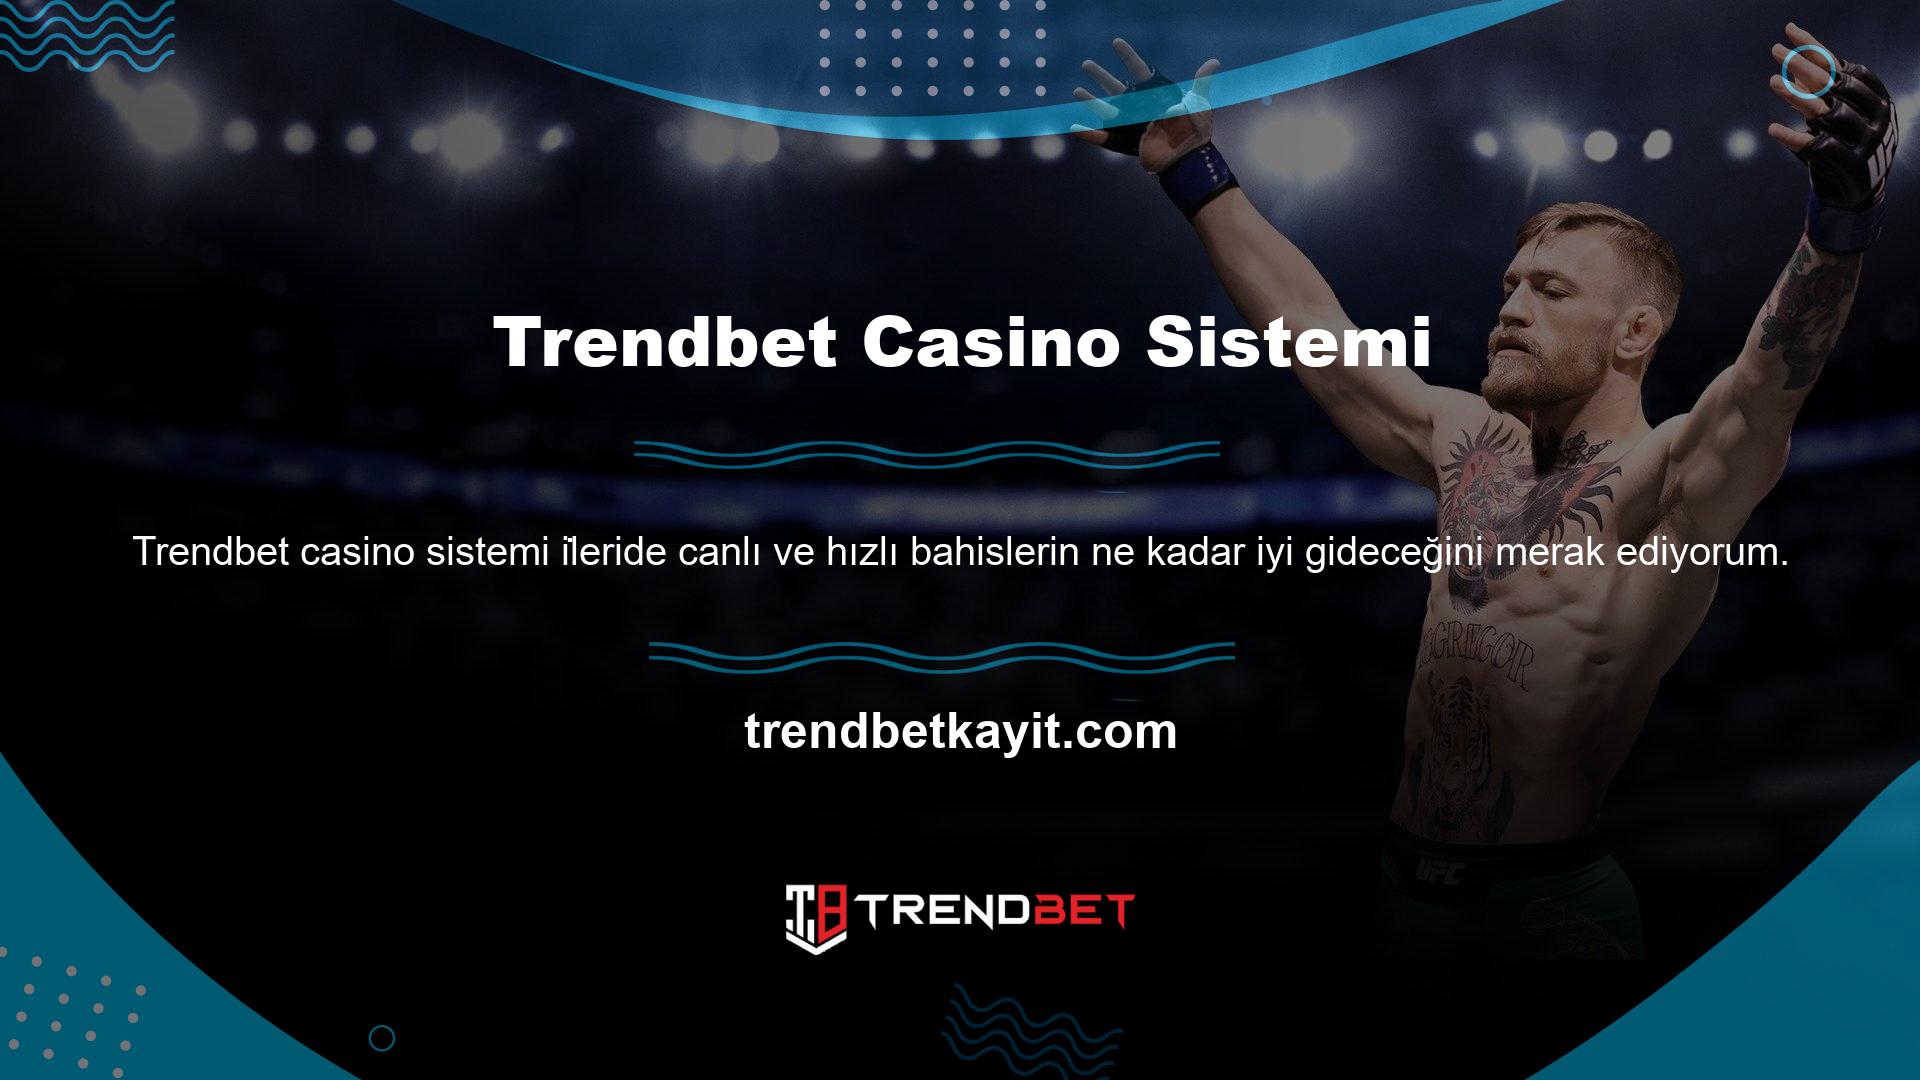 Sitemizi beğenen casino tutkunları, yeni adı değiştirilen Trendbet sitesi için doğru adres bilgilerini kullanmaktadır